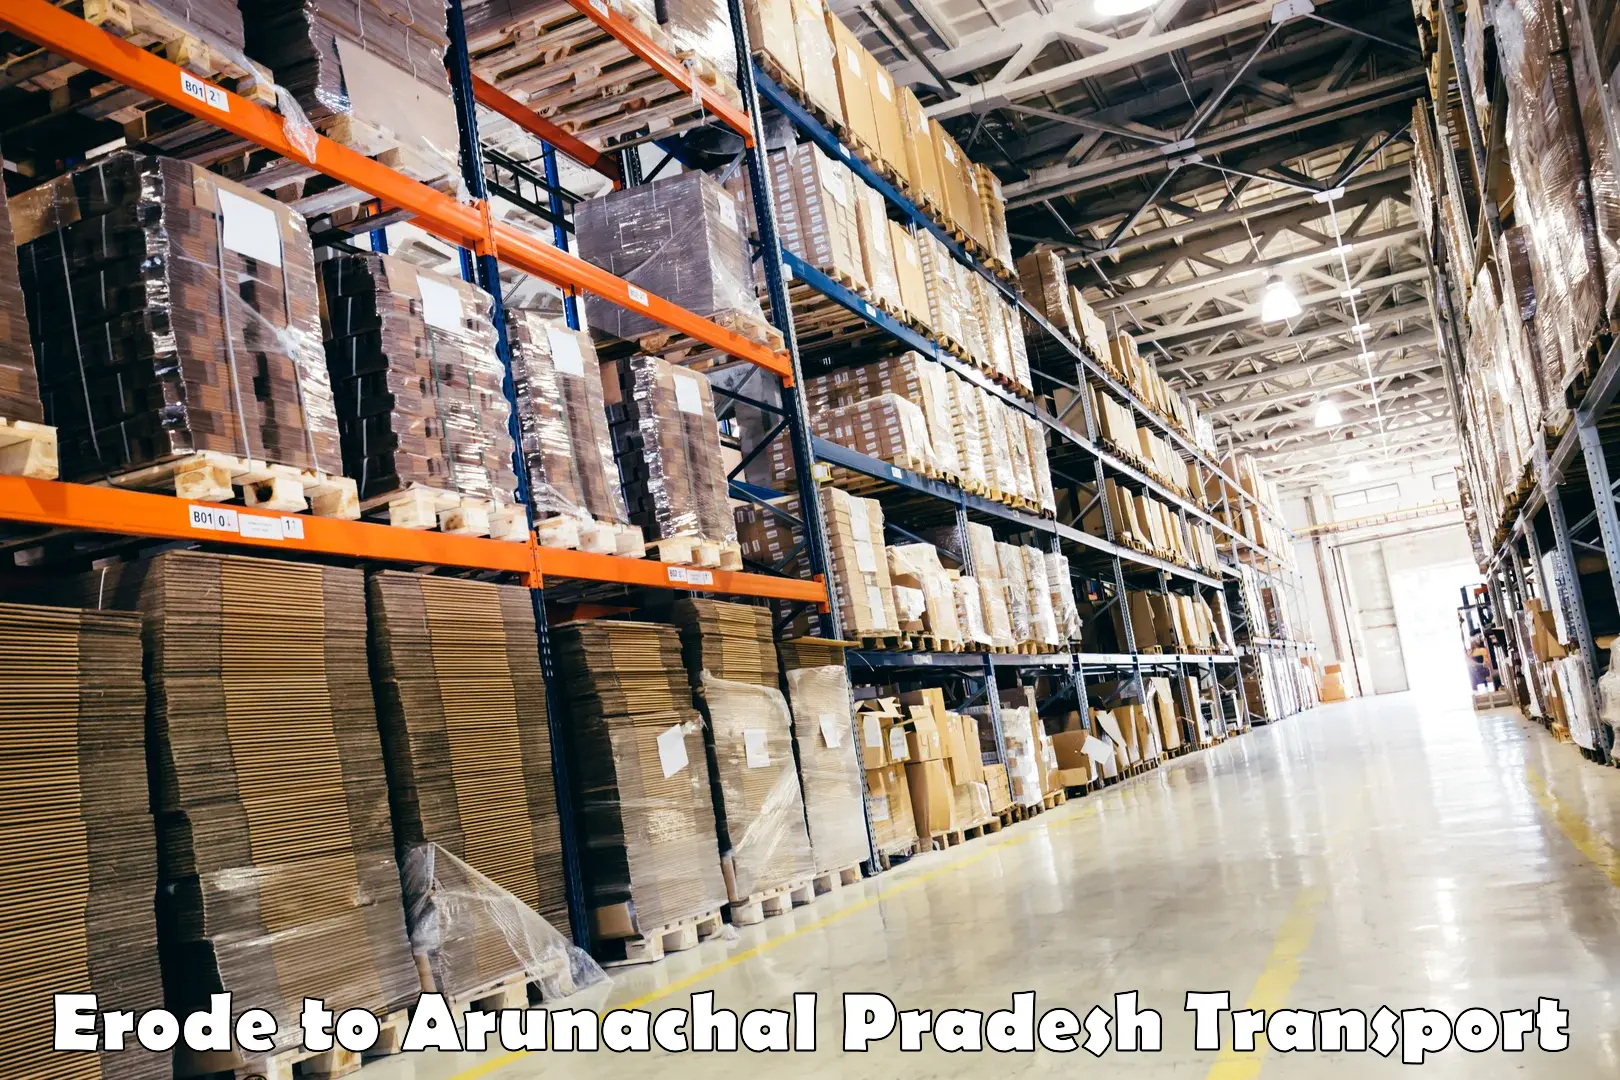 Shipping partner Erode to Arunachal Pradesh